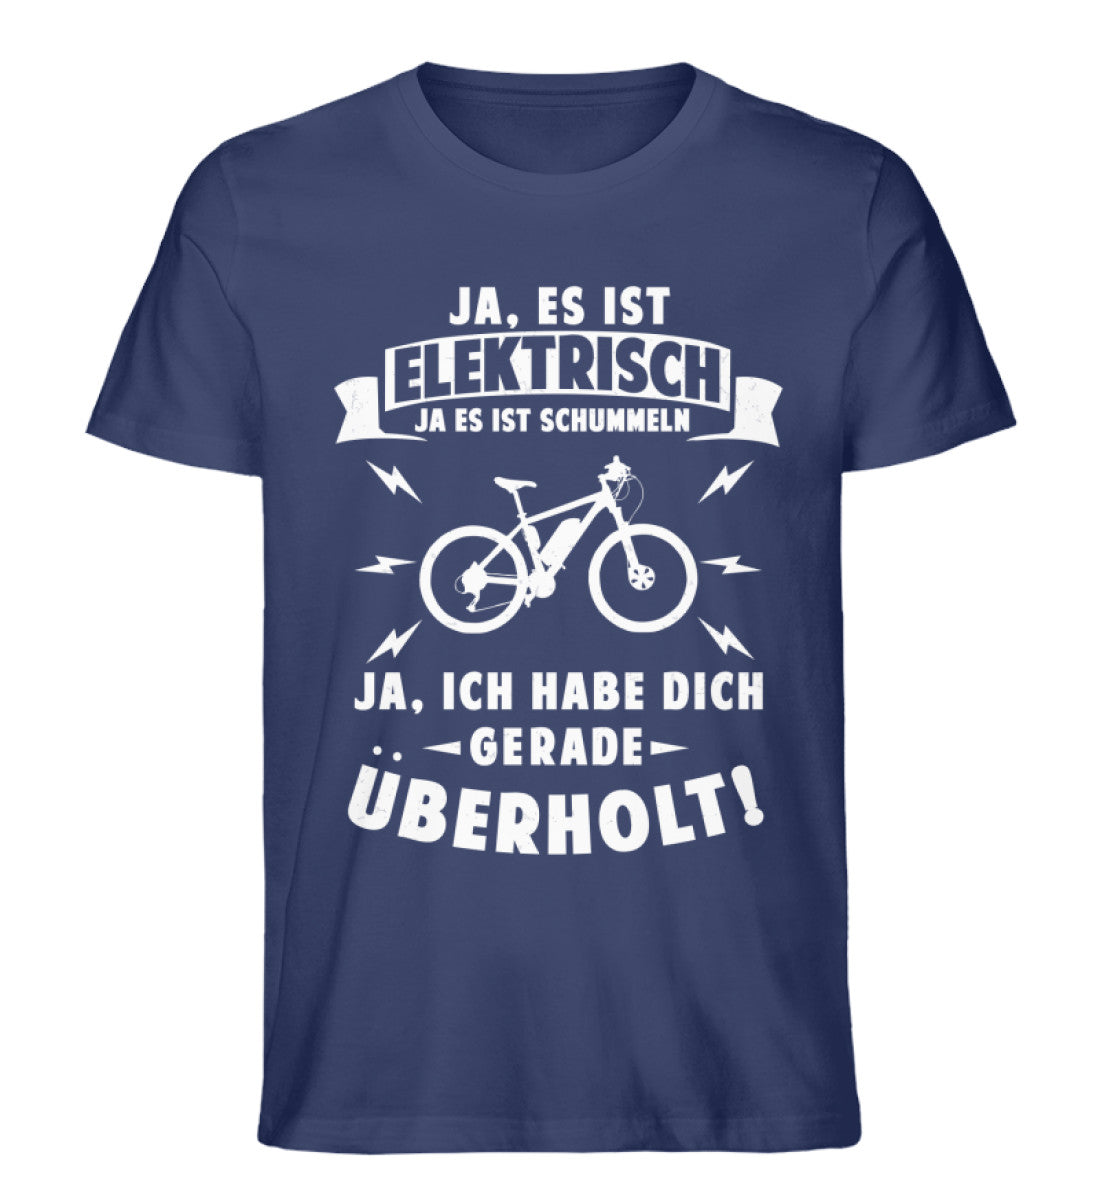 Ist elektrisch - Habe dich überholt - Herren Organic T-Shirt e-bike Navyblau